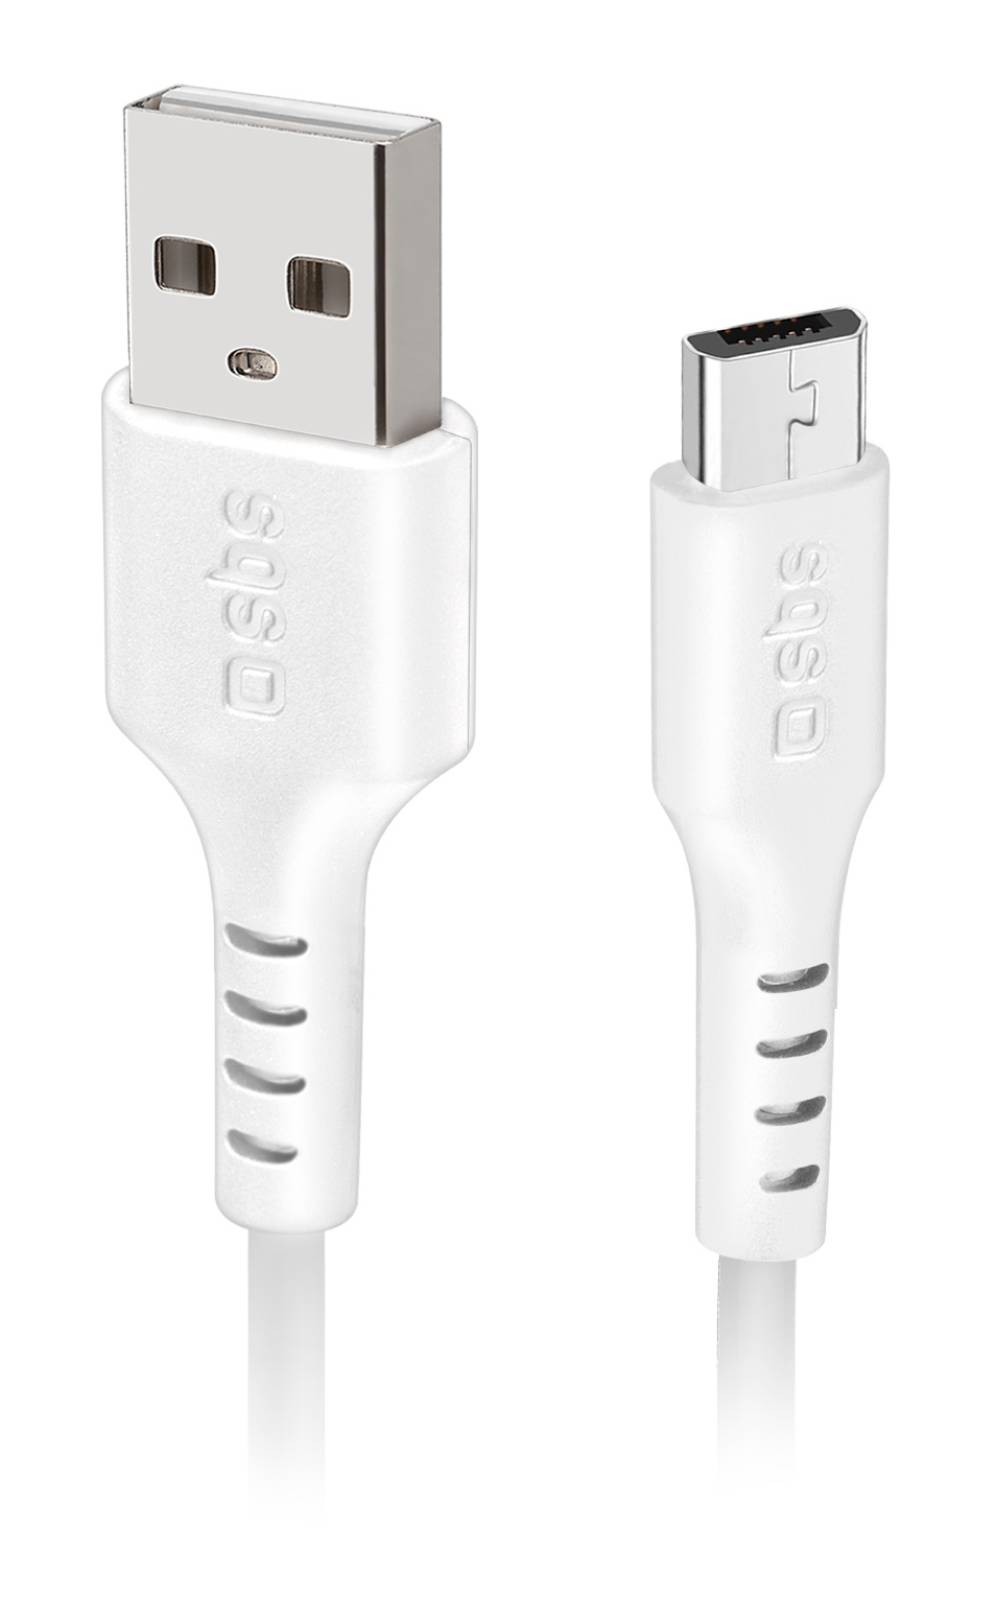 SBS Câble USB  - CABL-USB-MICROUSB-BL